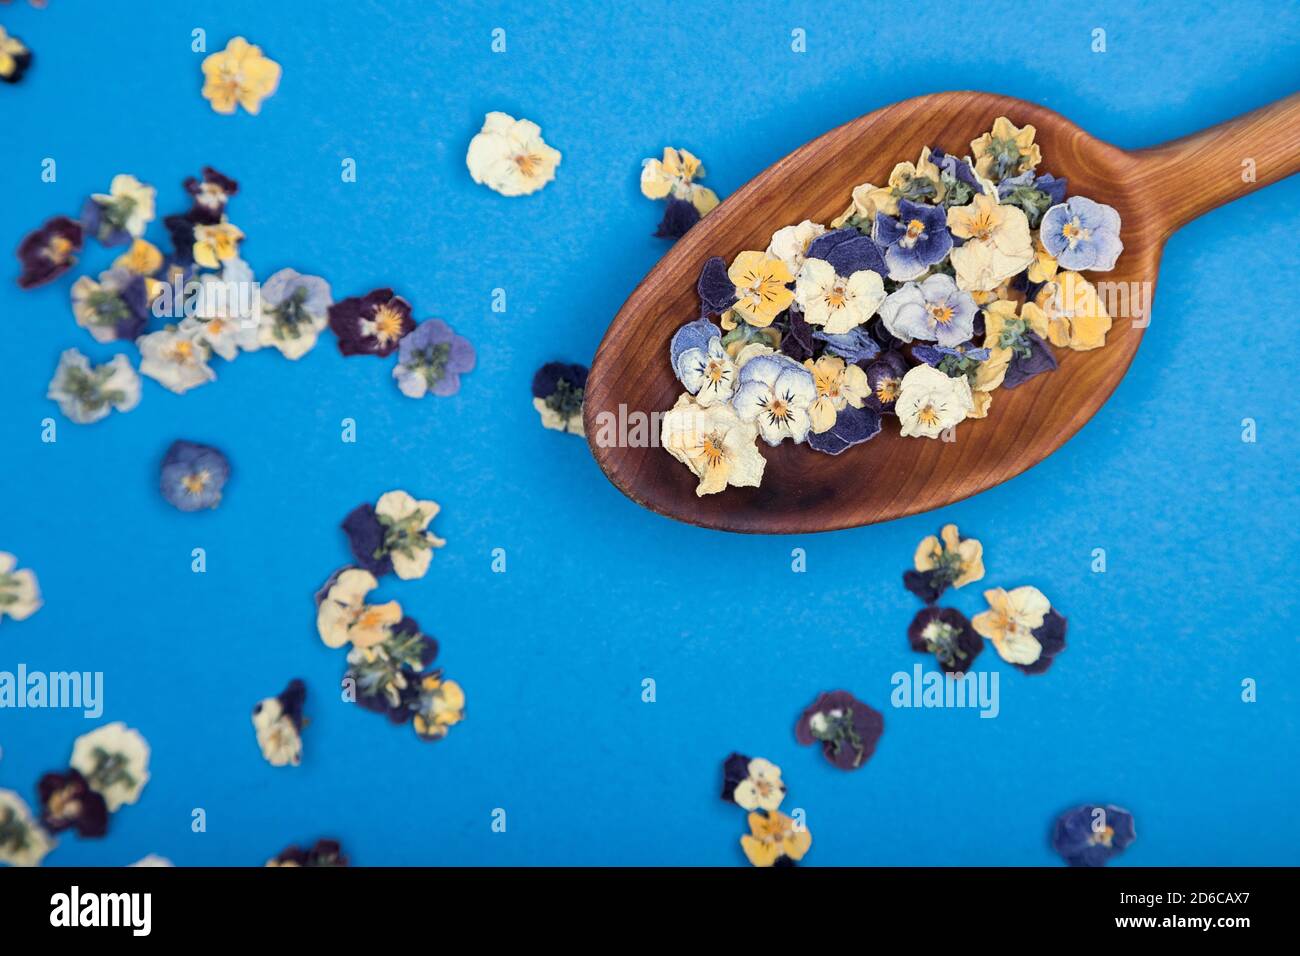 Vue de dessus d'une cuillère en bois avec des fleurs comestibles sur fond bleu. Mise au point sélective Banque D'Images